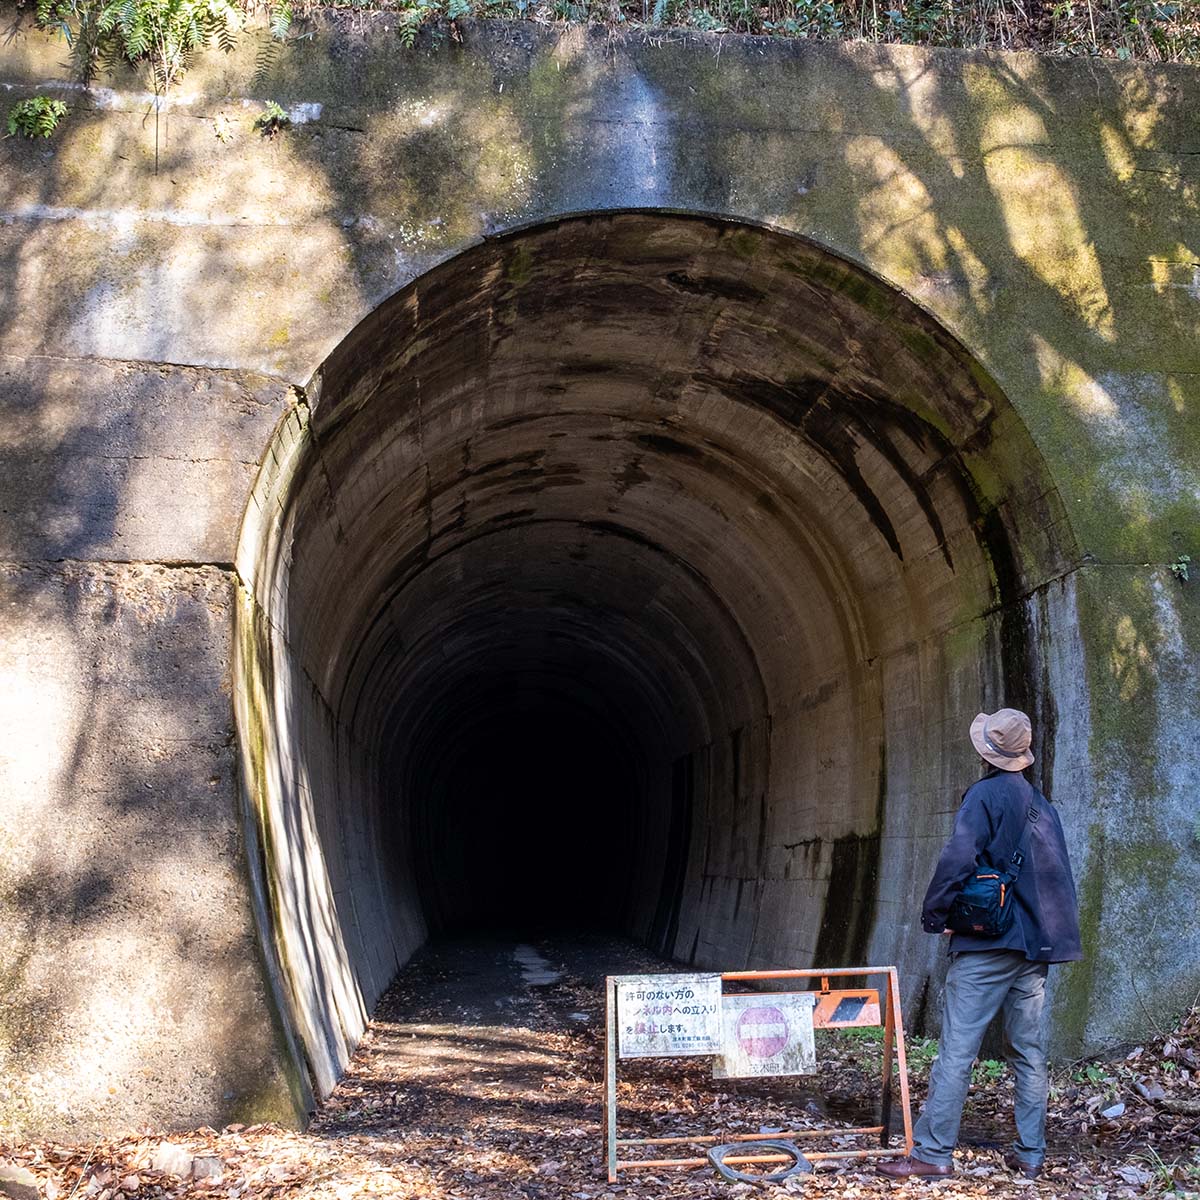 大峯山トンネル内は通行不可で迂回路がある。